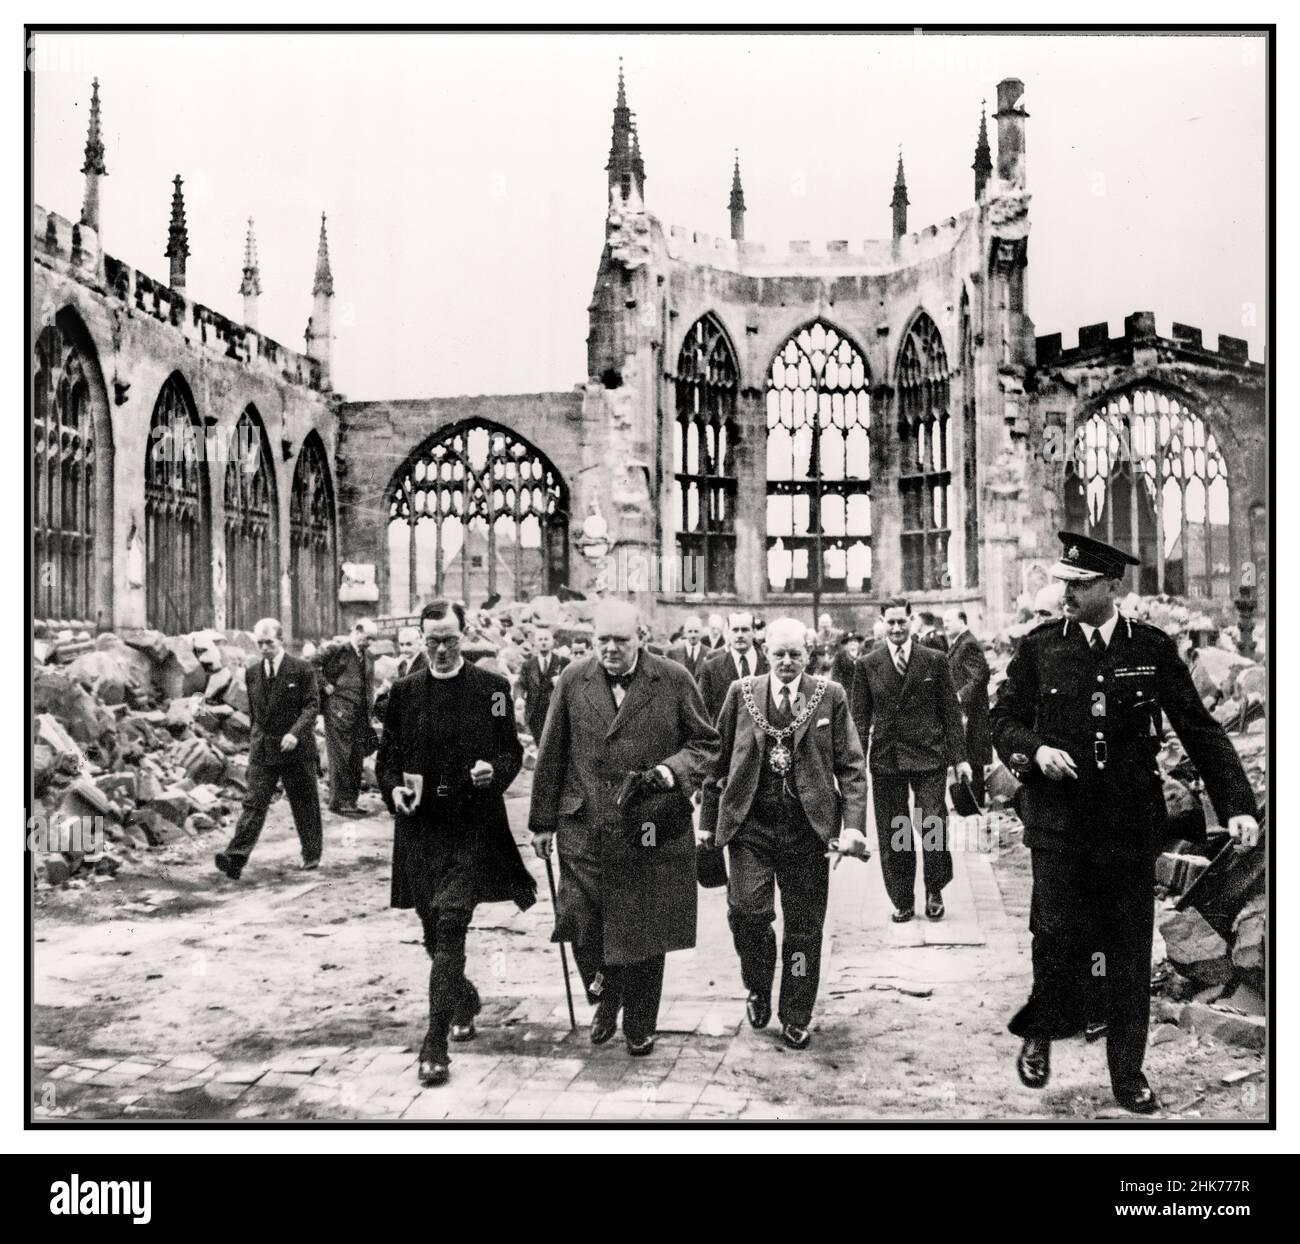 Winston Churchill visite la cathédrale de Coventry le Premier ministre britannique Grim fact visite la cathédrale de Coventry severley endommagé par l'Allemagne nazie Luftwaffe attentat terroriste à la bombe Coventry UK 28th septembre 1941. Le Premier ministre Winston Churchill marche avec le maire de Coventry et un membre du clergé de l'Église d'Angleterre à travers la nef ruinée de la cathédrale de Coventry après qu'elle ait été bombardée par l'armée de l'air allemande en novembre 1940. Photographie officielle de guerre pour le gouvernement britannique. Banque D'Images